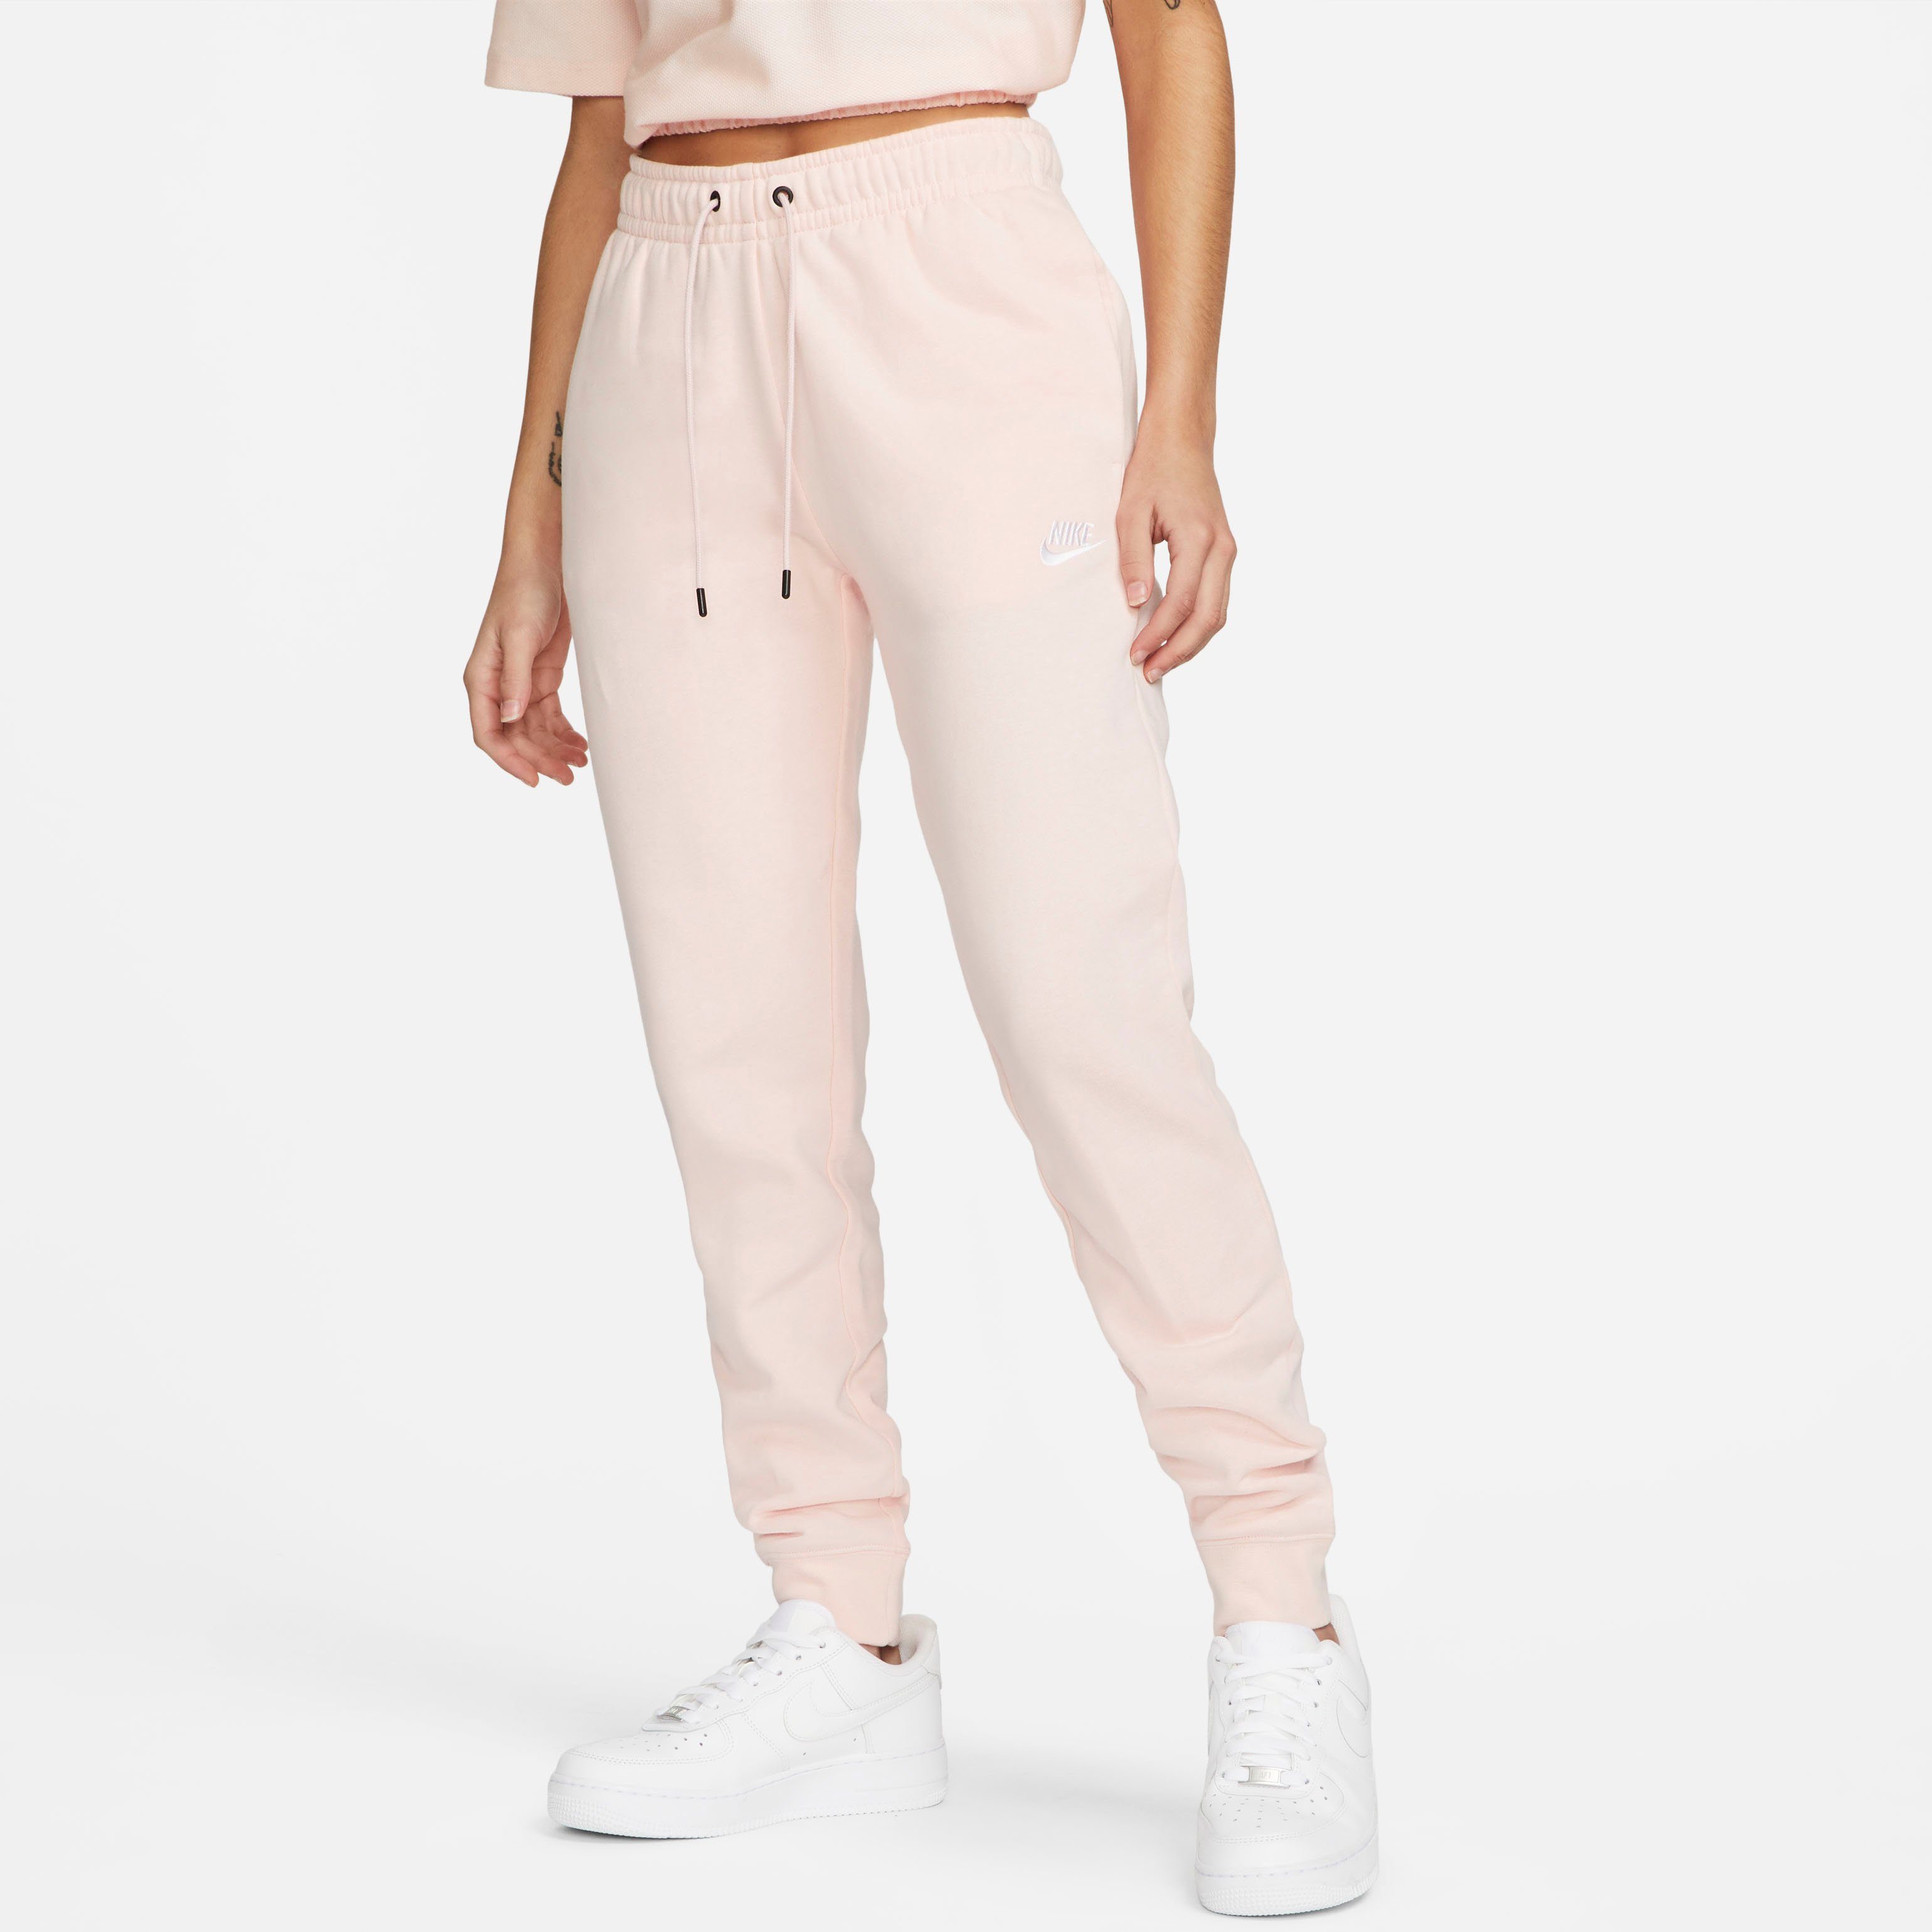 Nike Nike sportswear essential fleece joggingbroek roze dames dames